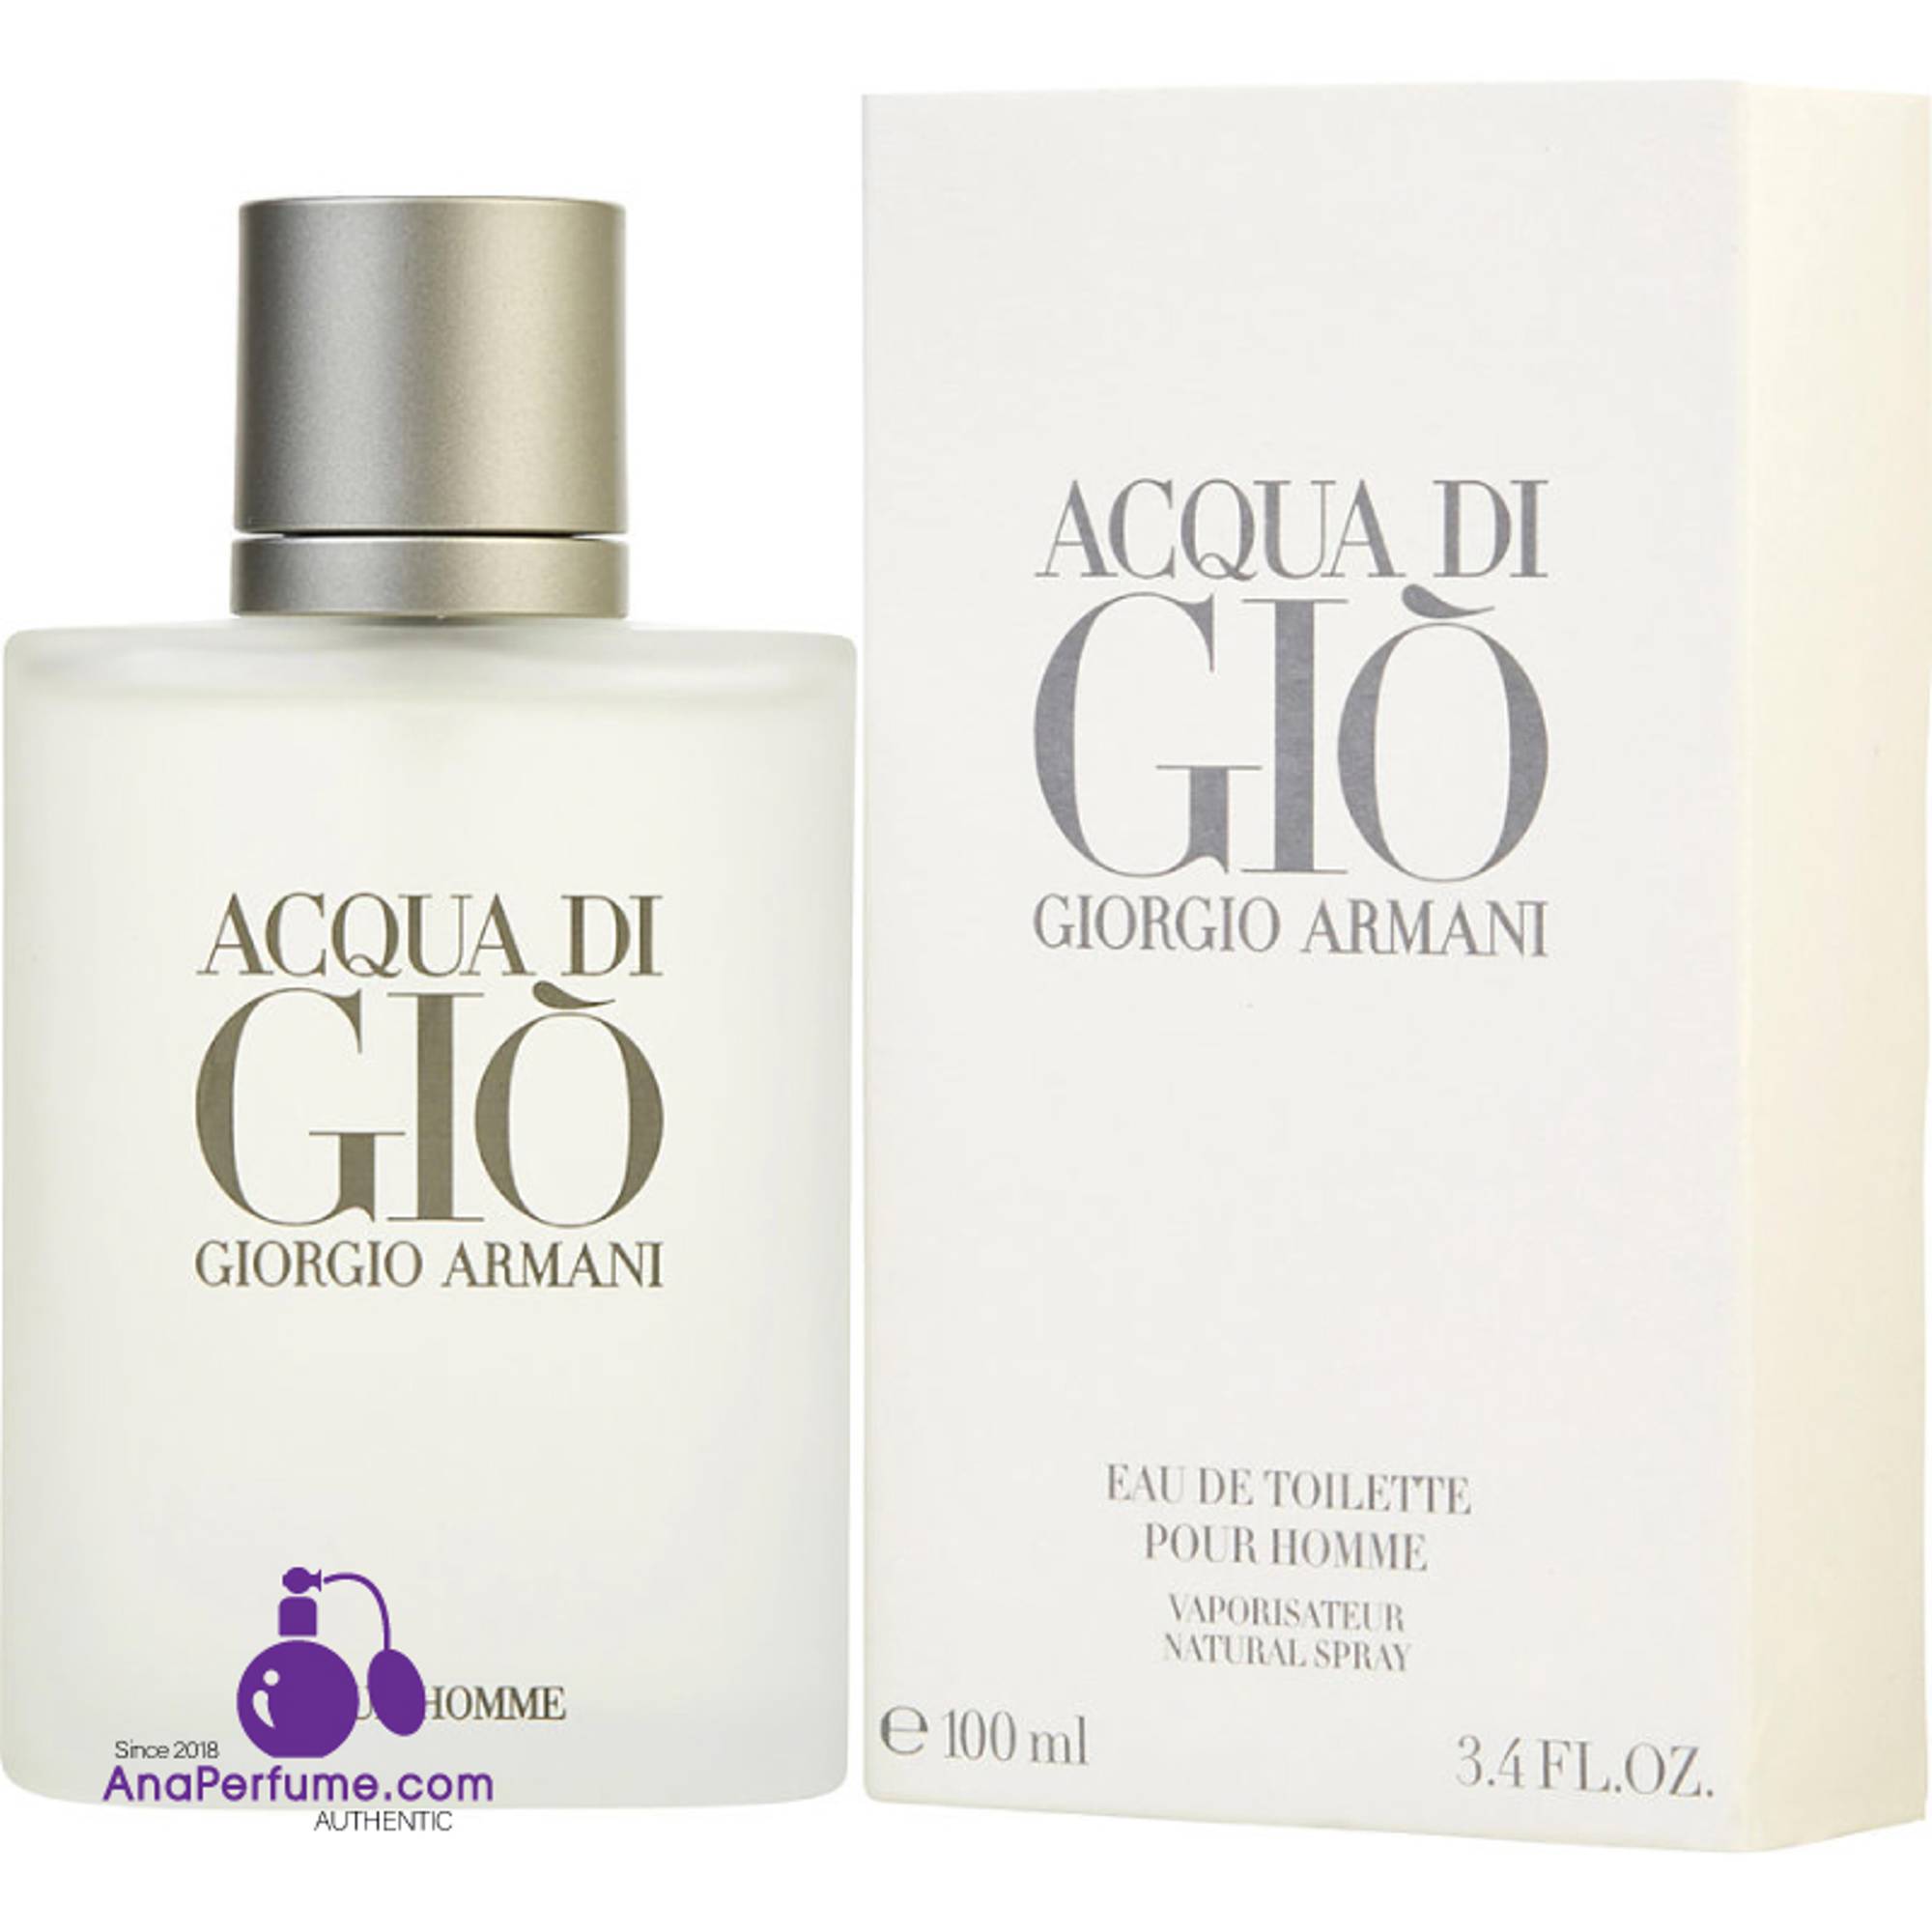 Nước hoa nam Acqua Di Gio EDT Giorgio Armani chính hãng nhập khẩu